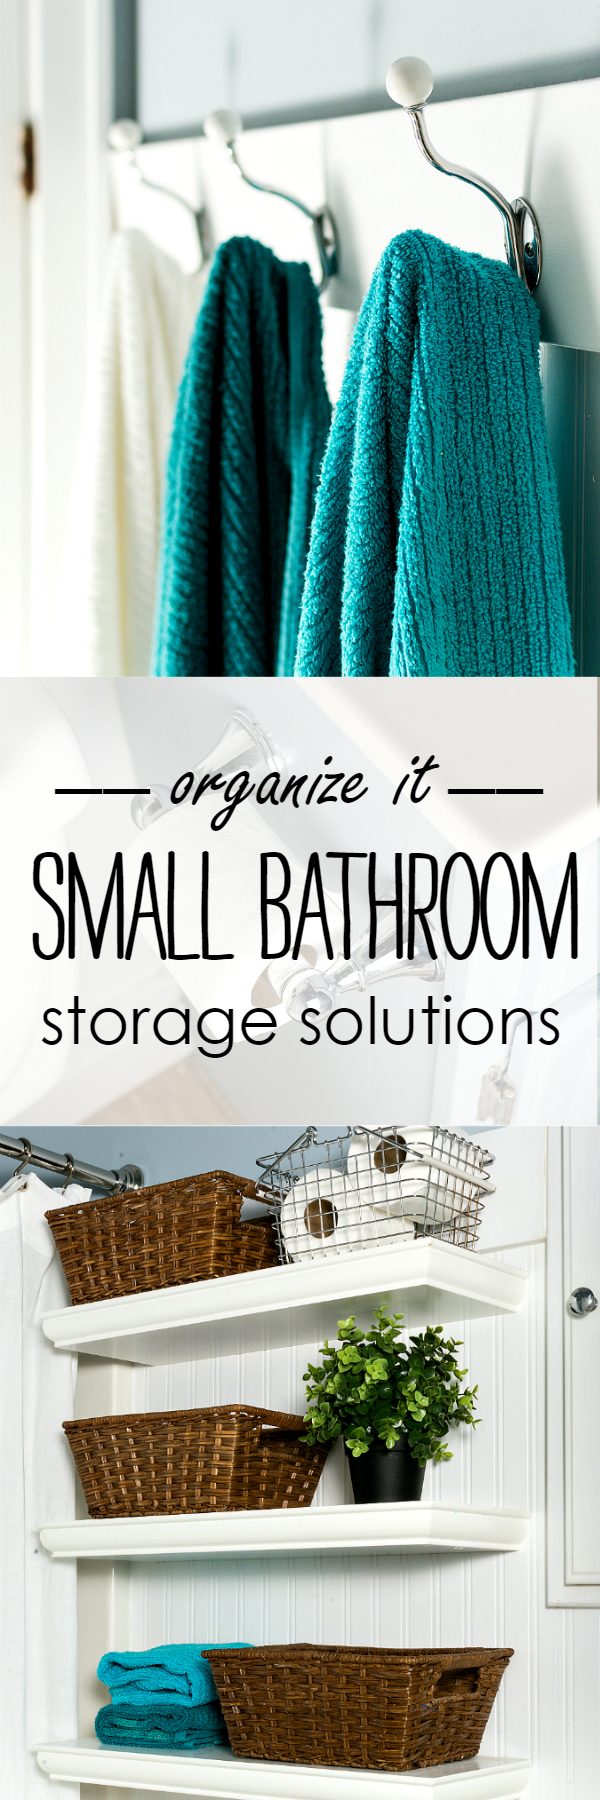 Storage Ideas for Small Bathroom